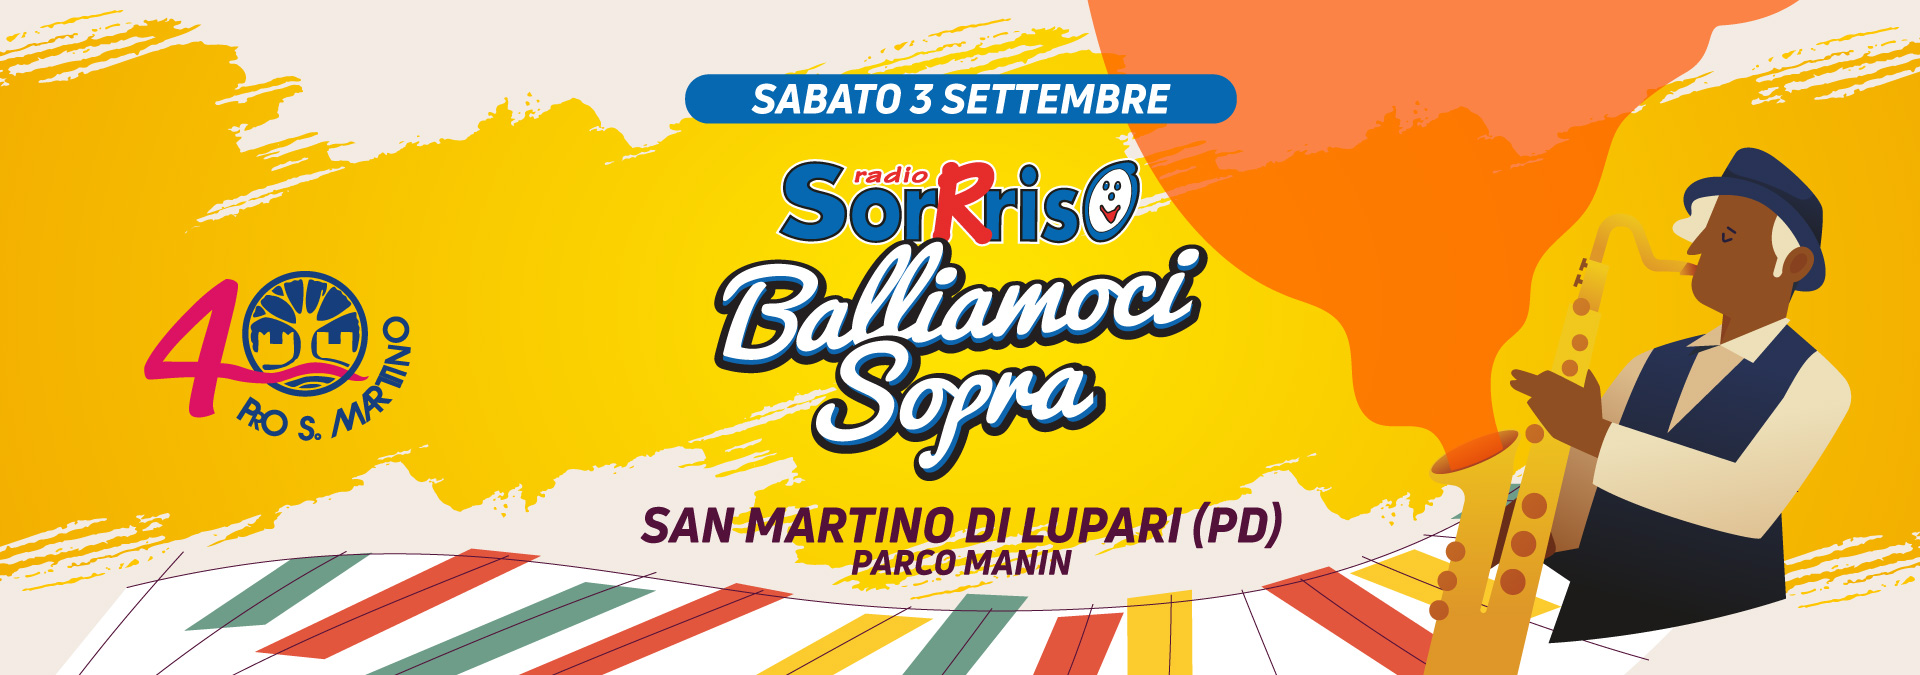 Balliamoci Sopra - San Martino di Lupari (PD)